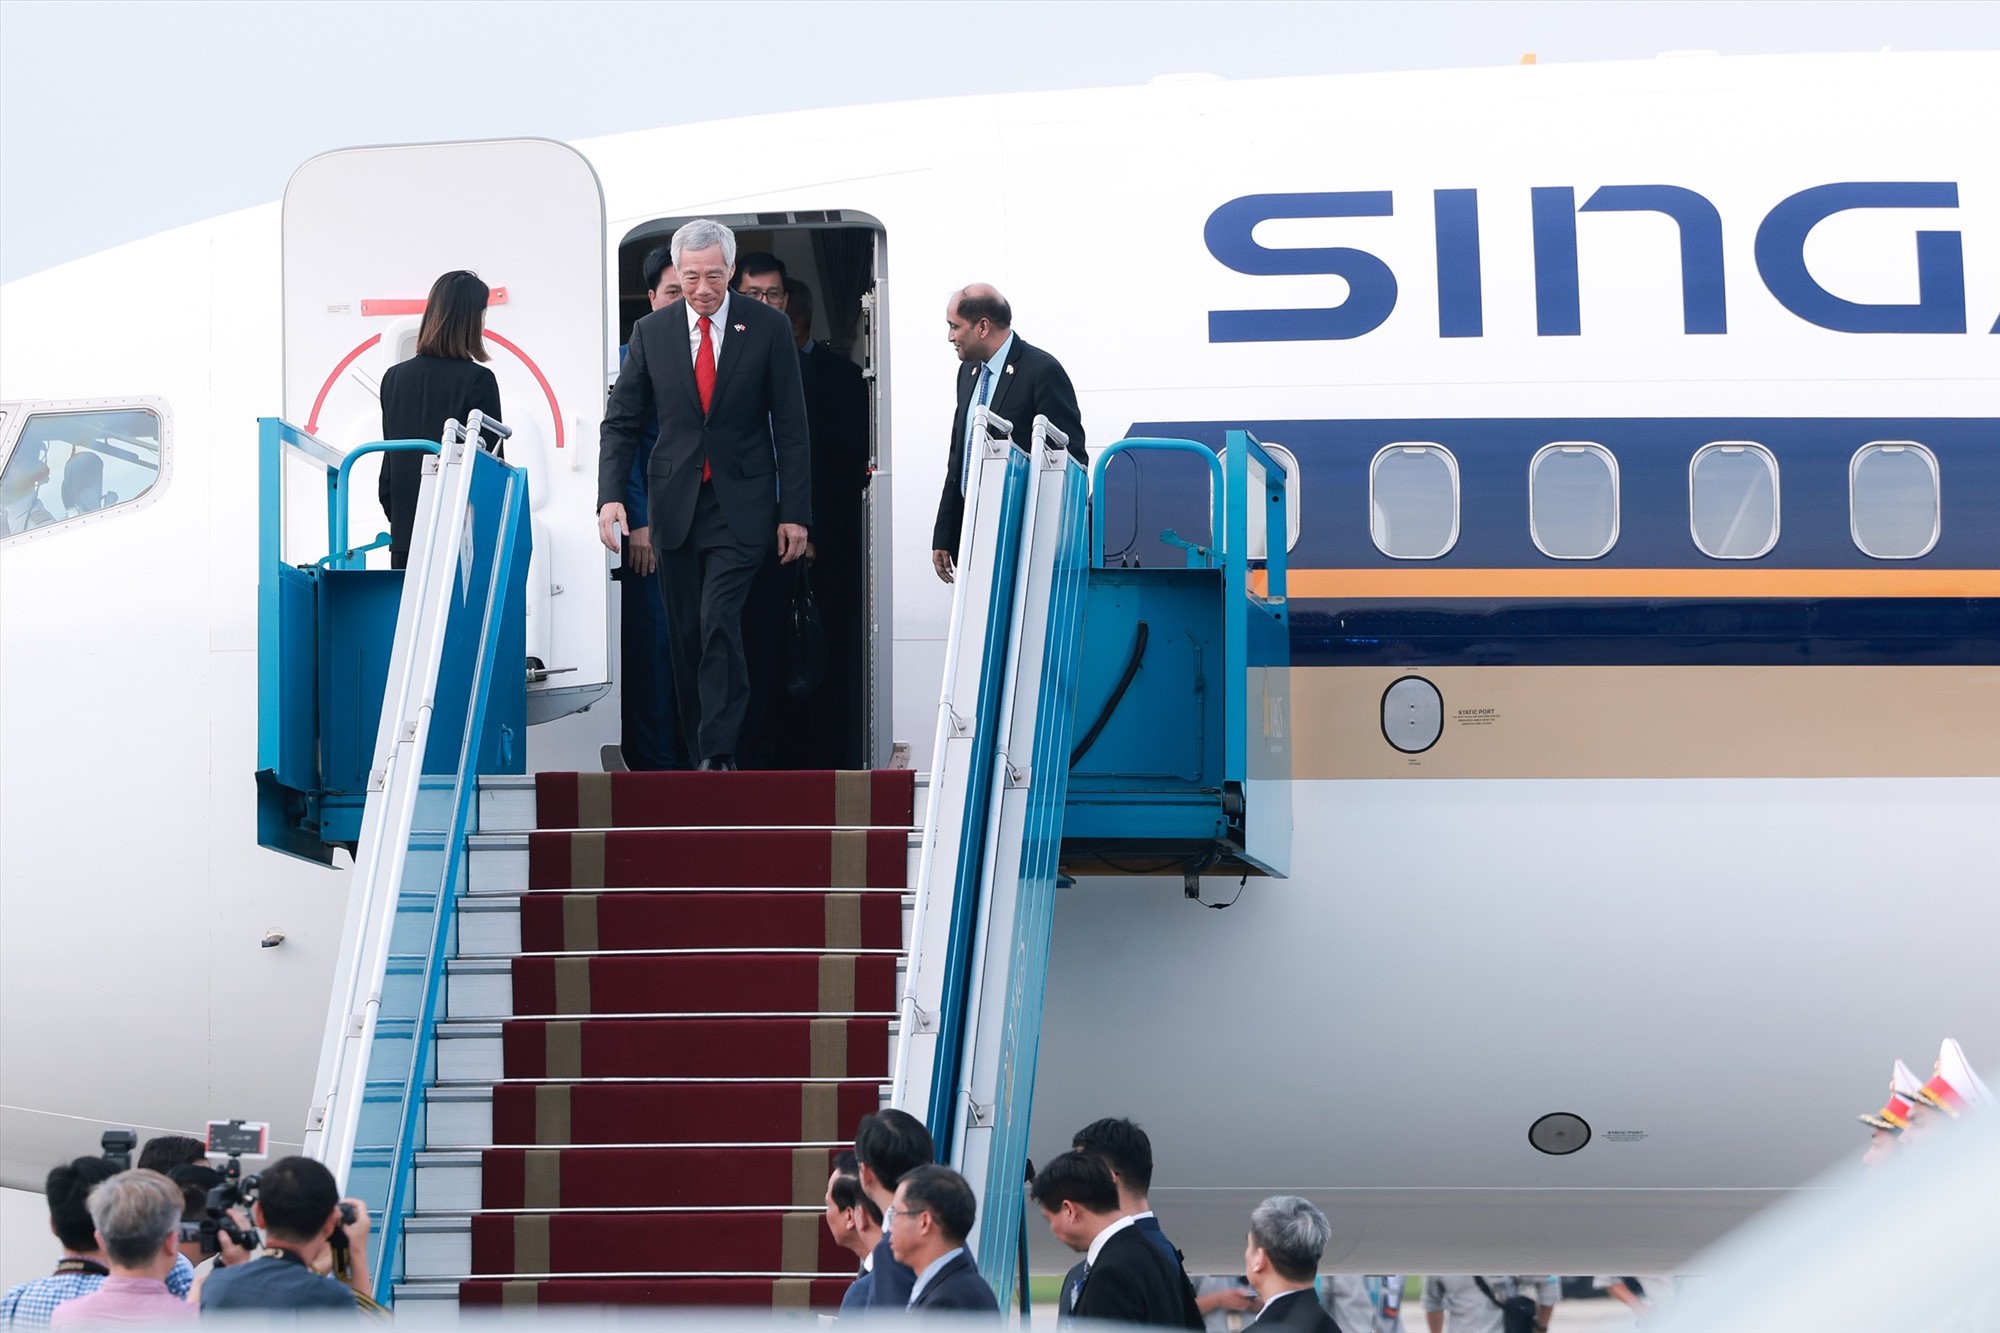 Chuyên cơ chở Thủ tướng Singapore Lý Hiển Long cùng đoàn đại biểu Singapore hạ cánh xuống sân bay Nội Bài, Hà Nội. Ảnh: Hải Nguyễn